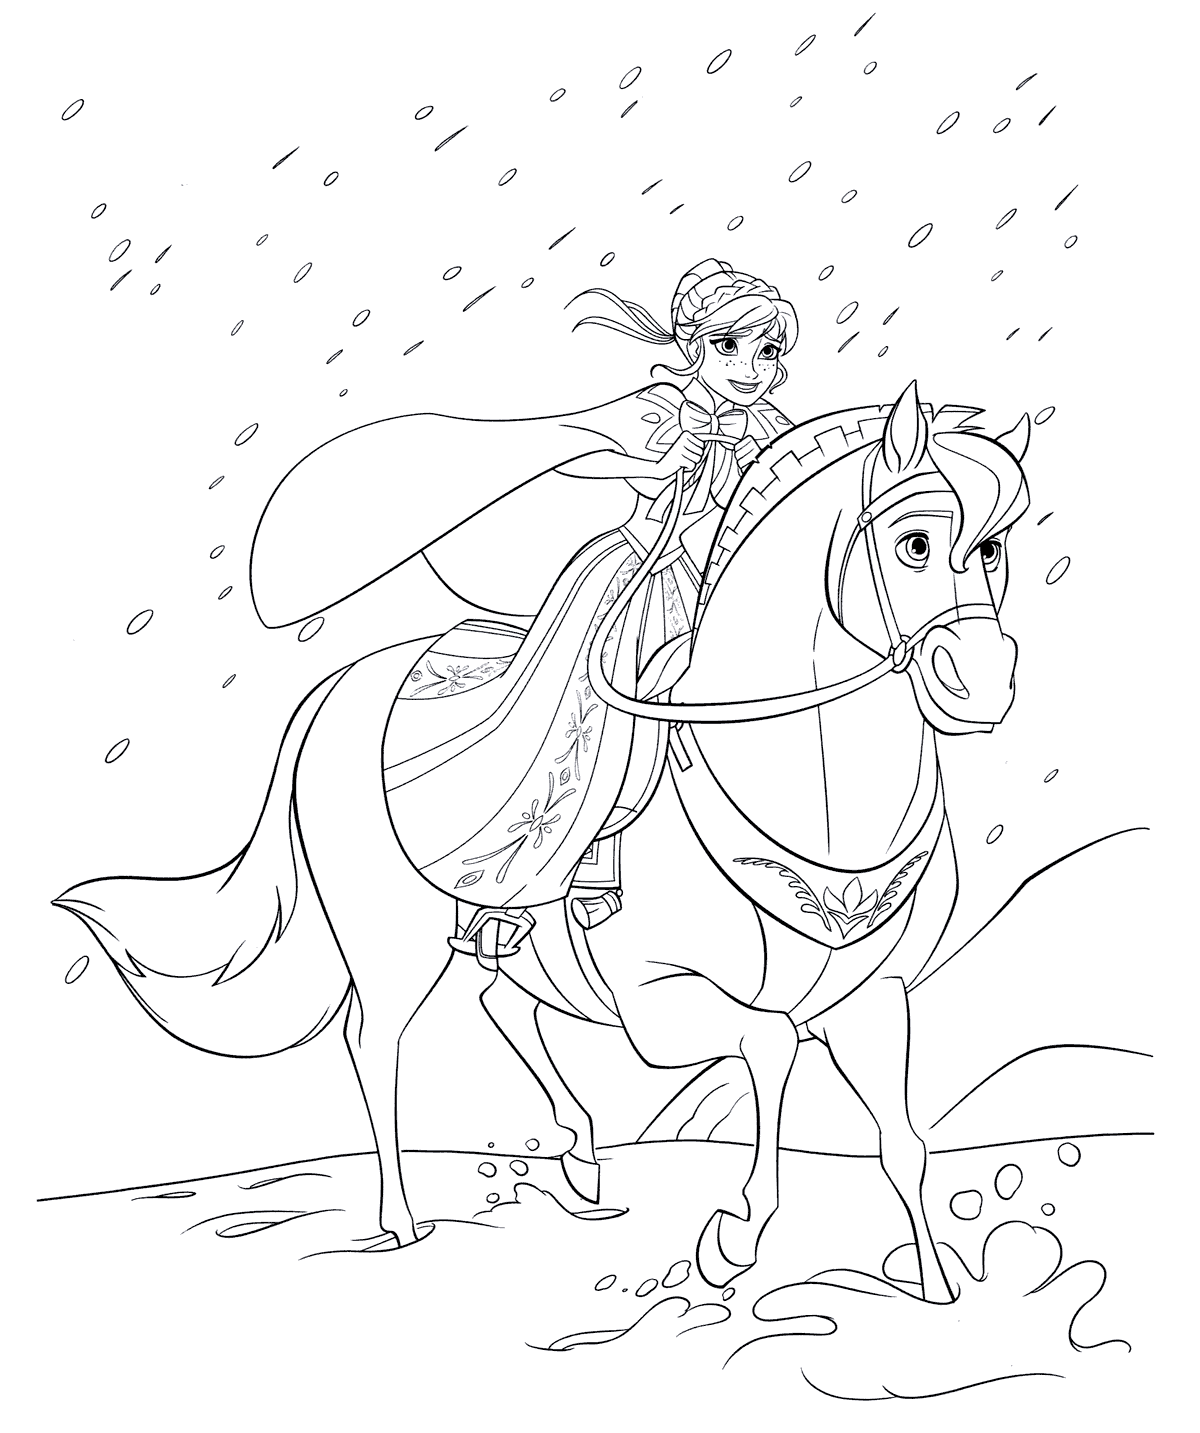 Анна скачет на лошади среди метели